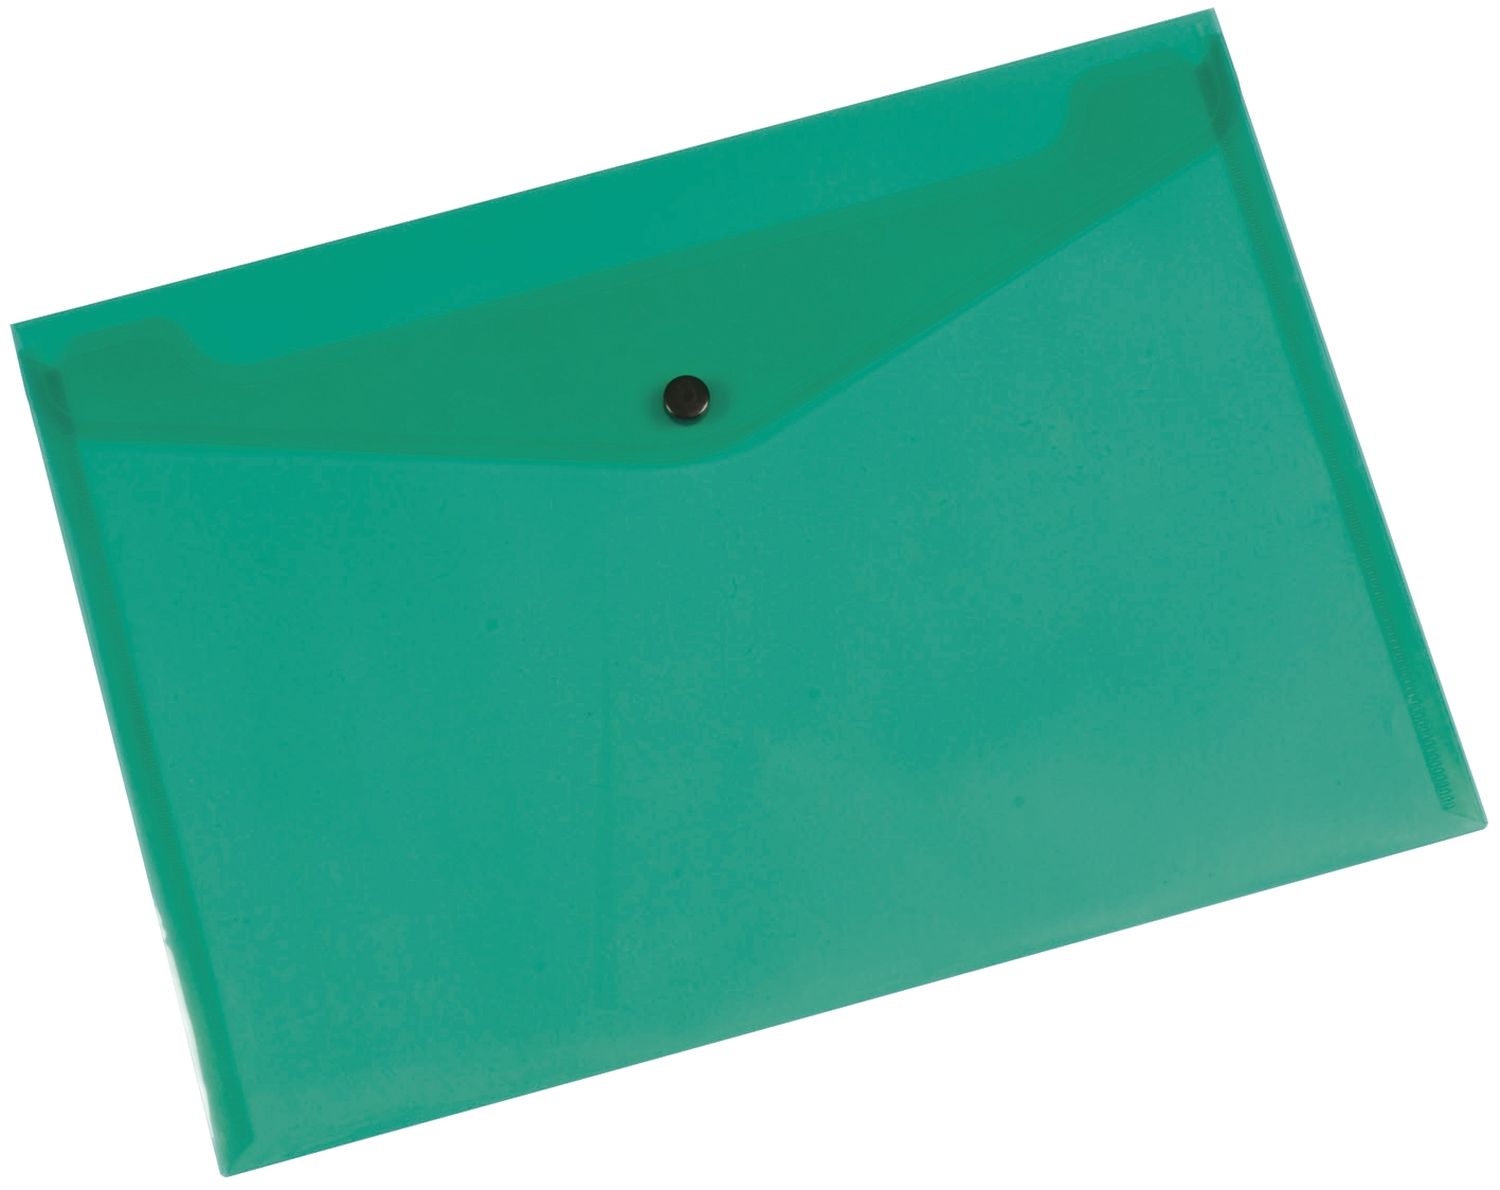 Dokumentenmappe - grün, A4 bis zu 50 Blatt